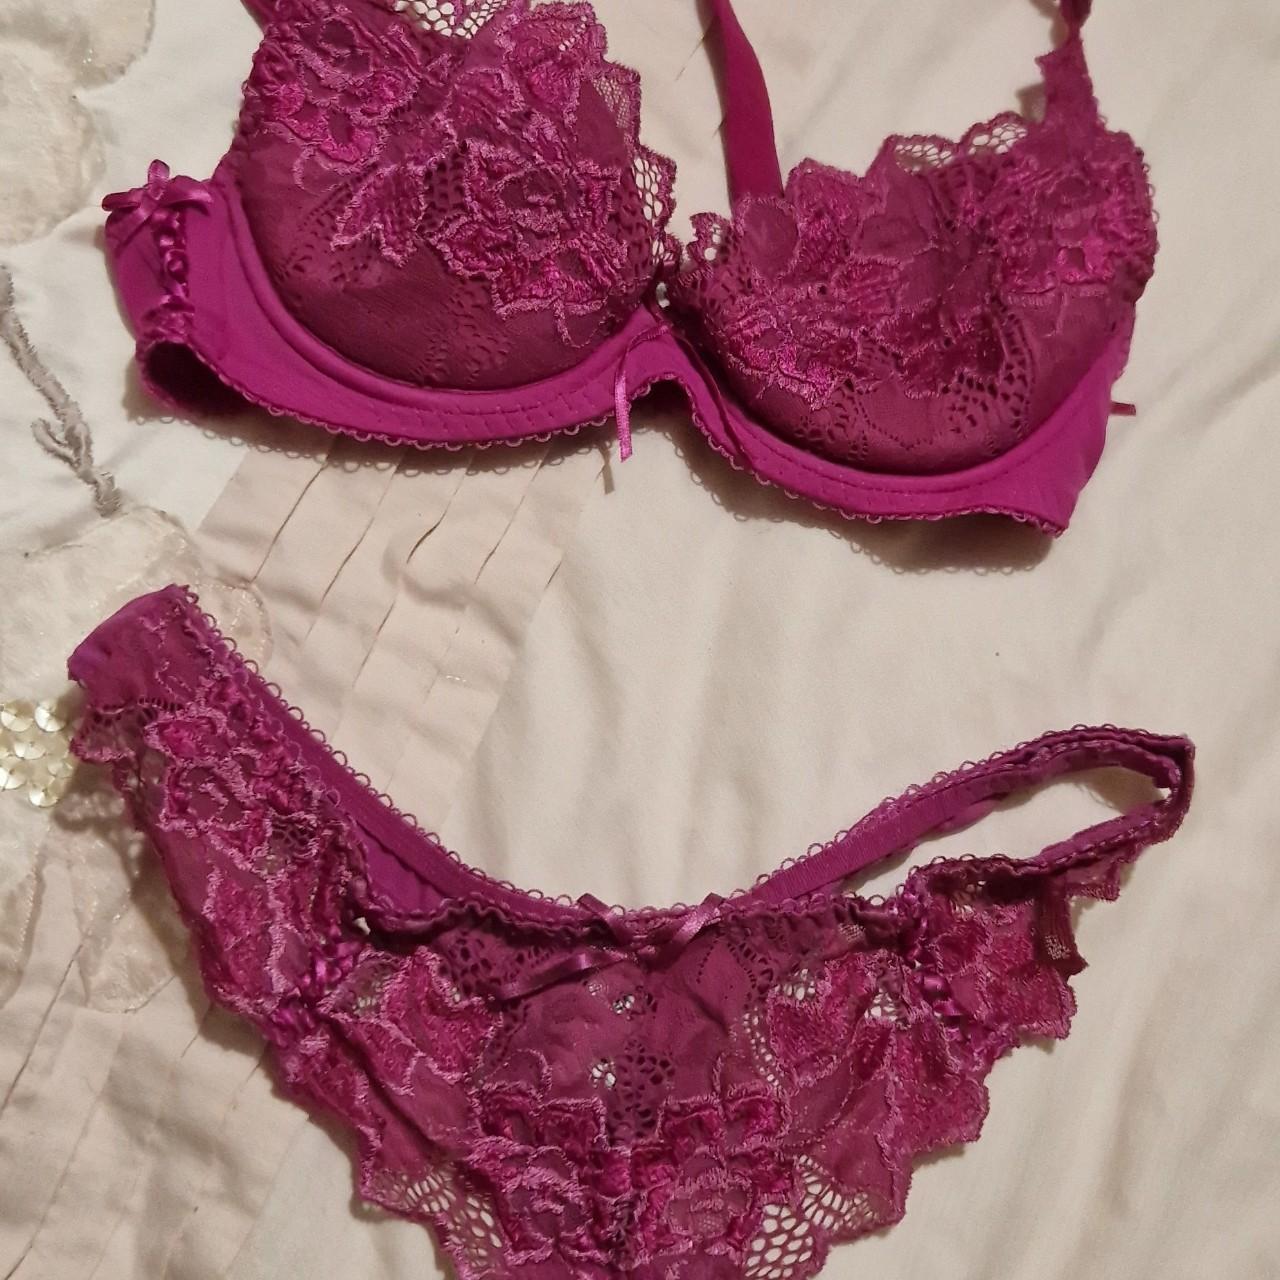 Lepel Pink Lingerie Set, hardly worn, 32b bra, UK 8... - Depop